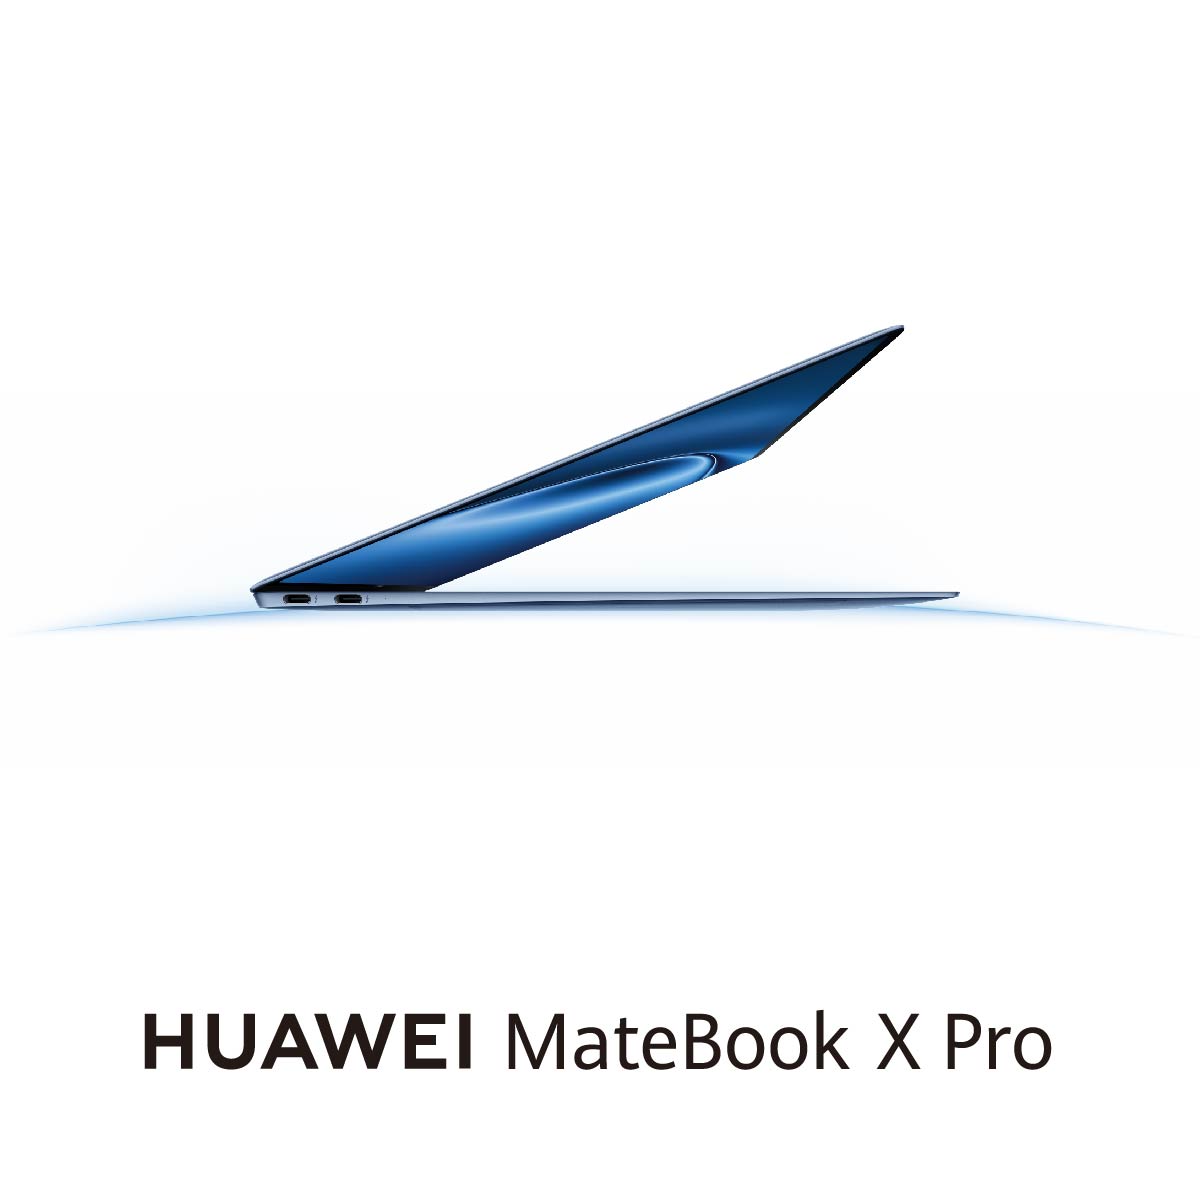 Conoce la nueva #HUAWEIMateBookXPro 💻 con pantalla OLED flexible para contenidos claros ✨ y contrastes nítidos 🤩. Aprovecha ya su oferta de lanzamiento en HUAWEI Store 👉 bit.ly/4bjaqDr